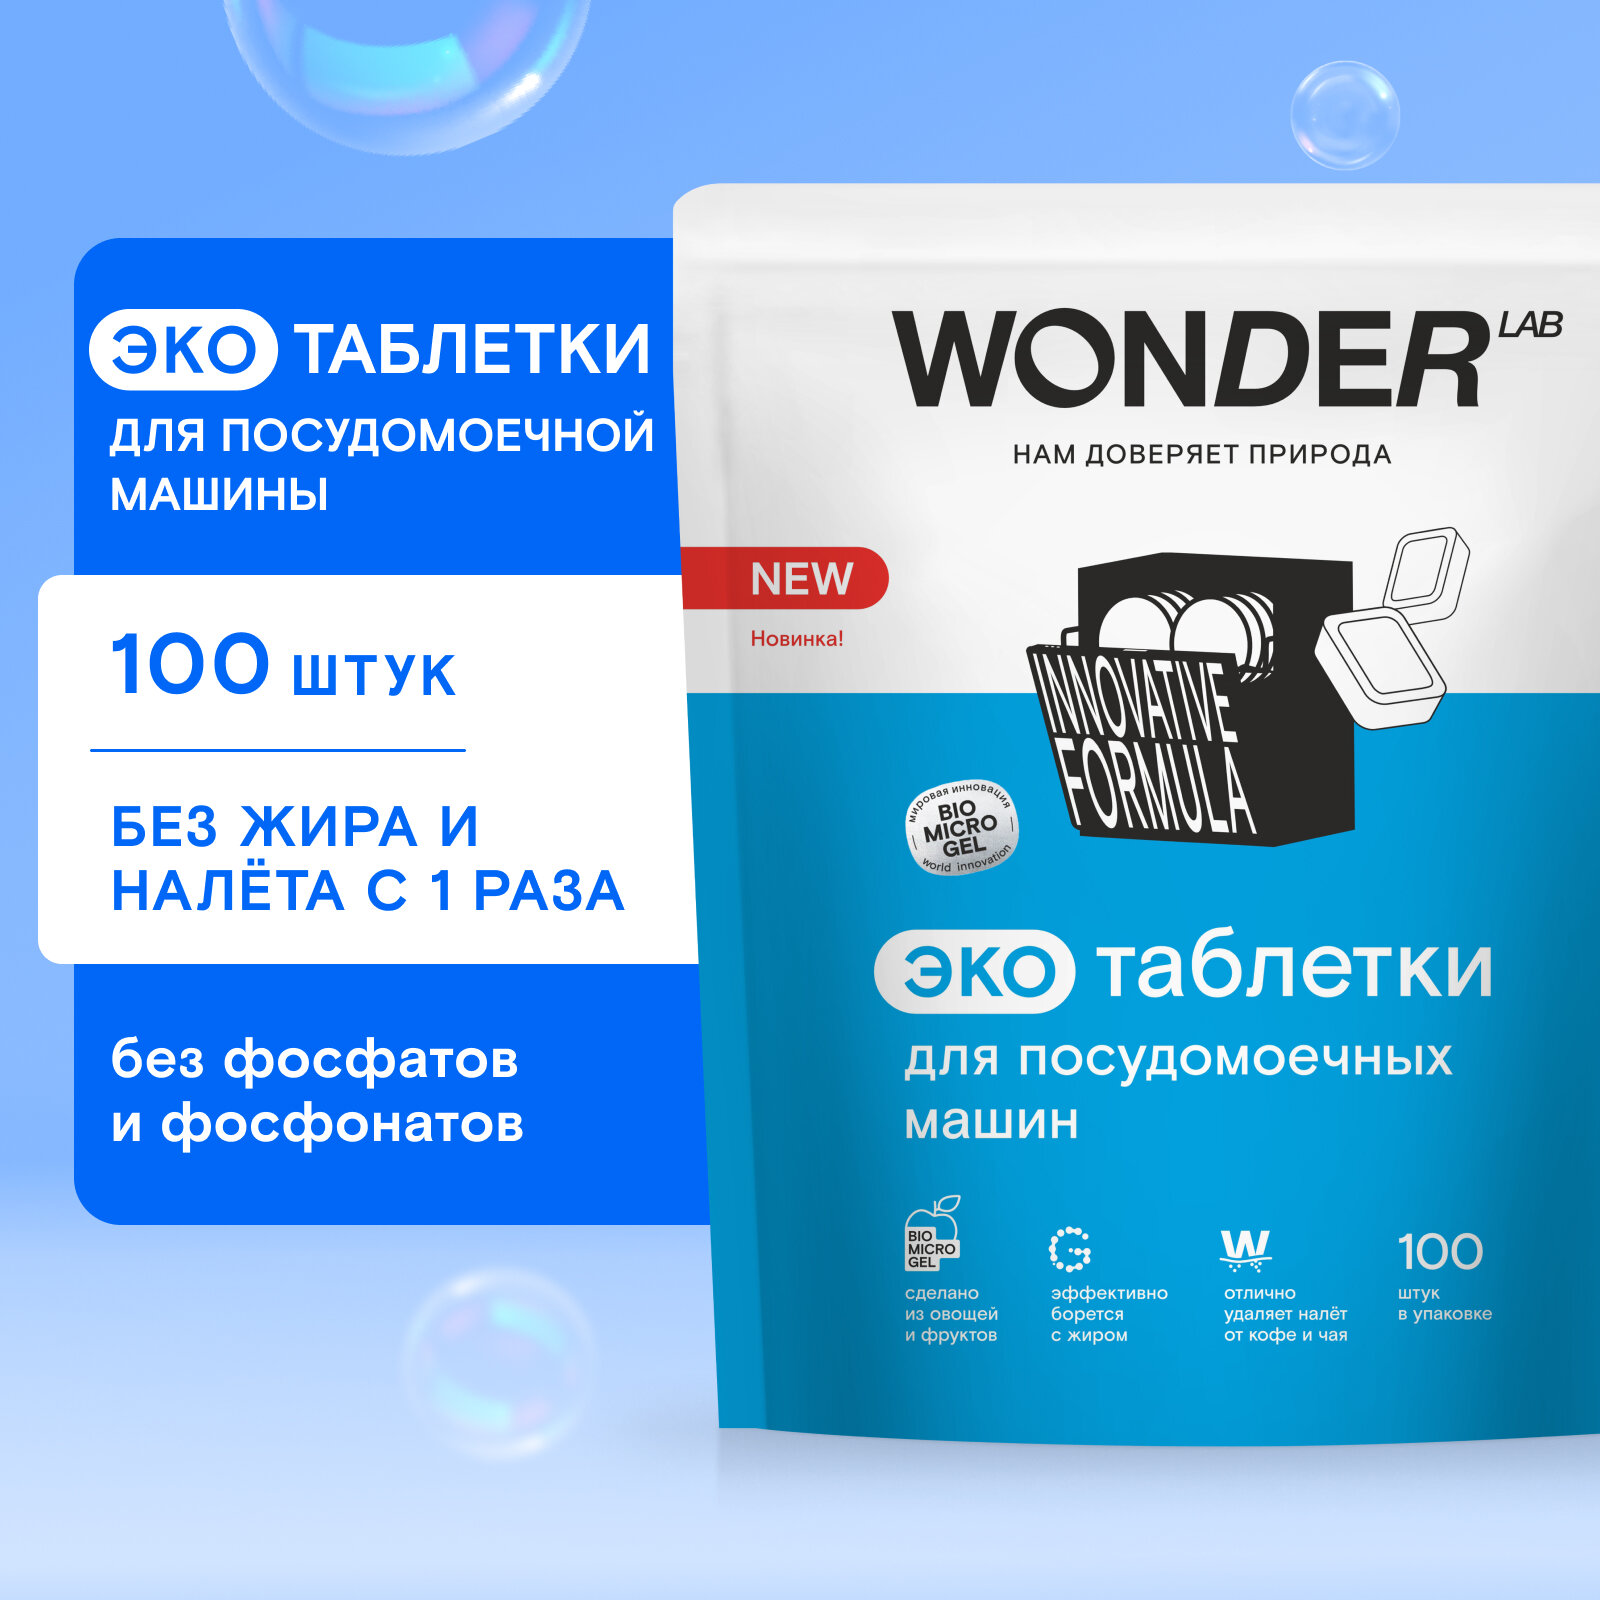 Таблетки для посудомоечной машины "Wonder Lab" 100 штук - фотография № 1